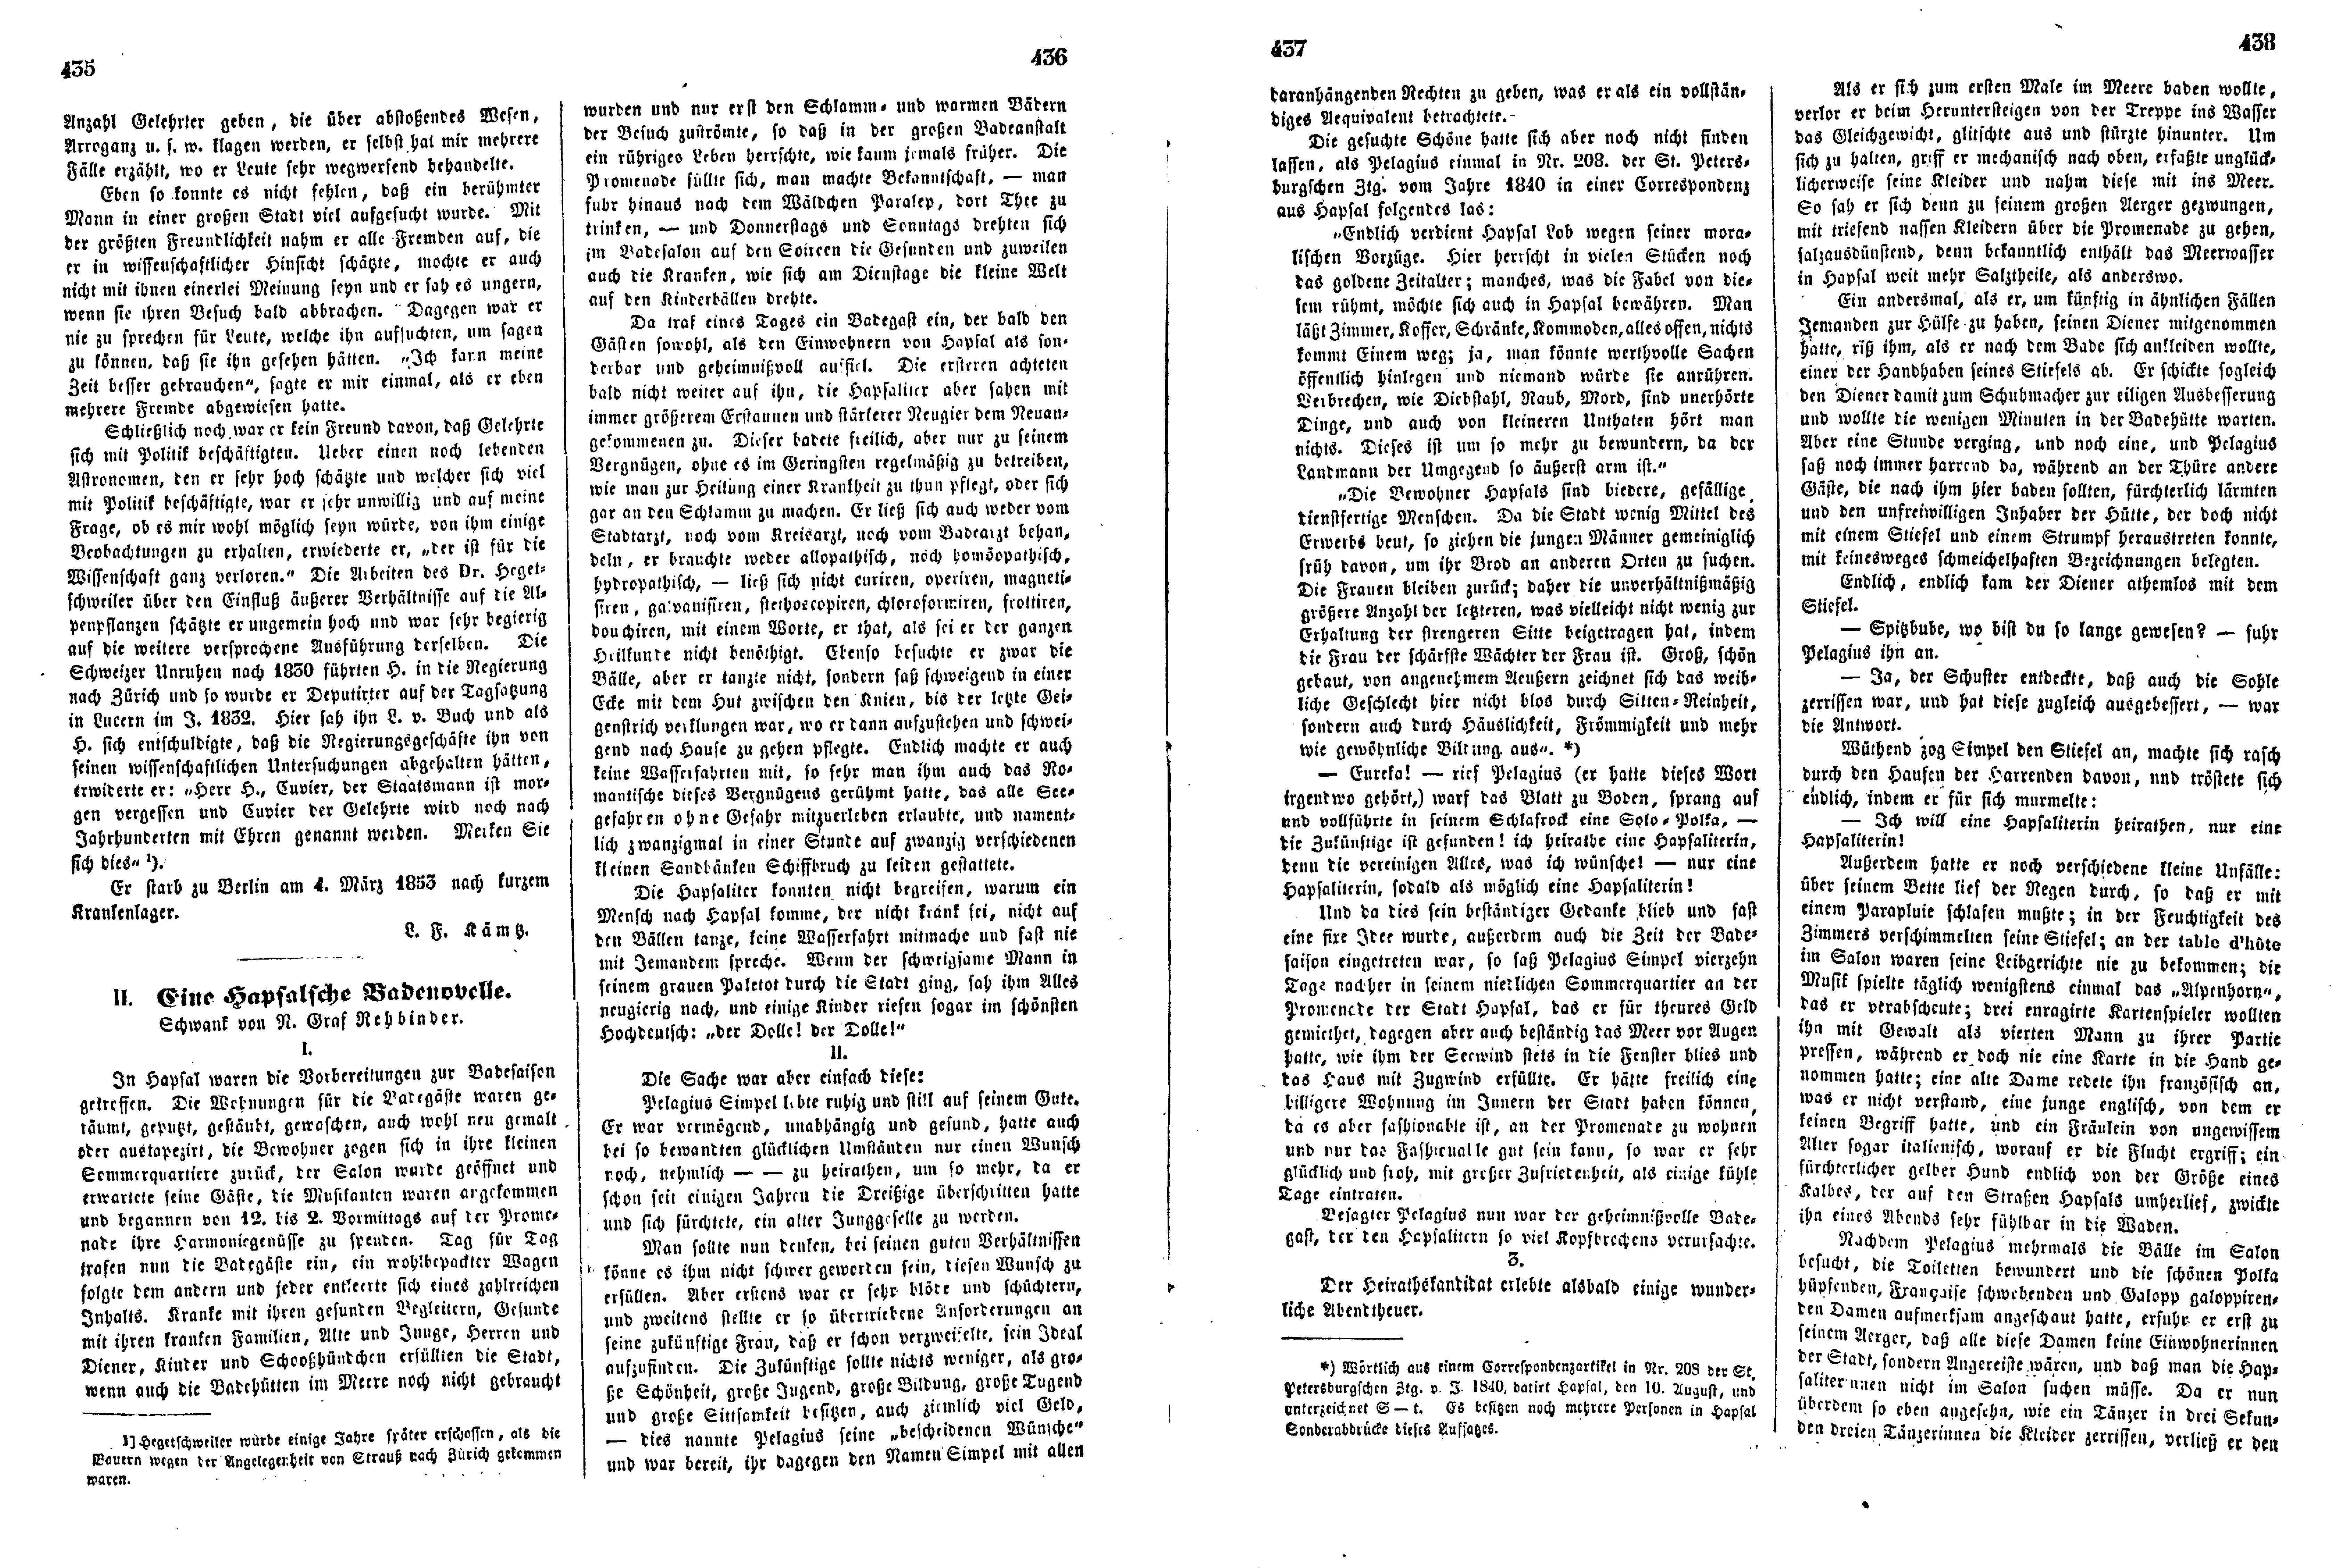 Eine Hapsalsche Badenovelle (1853) | 1. (435-438) Haupttext